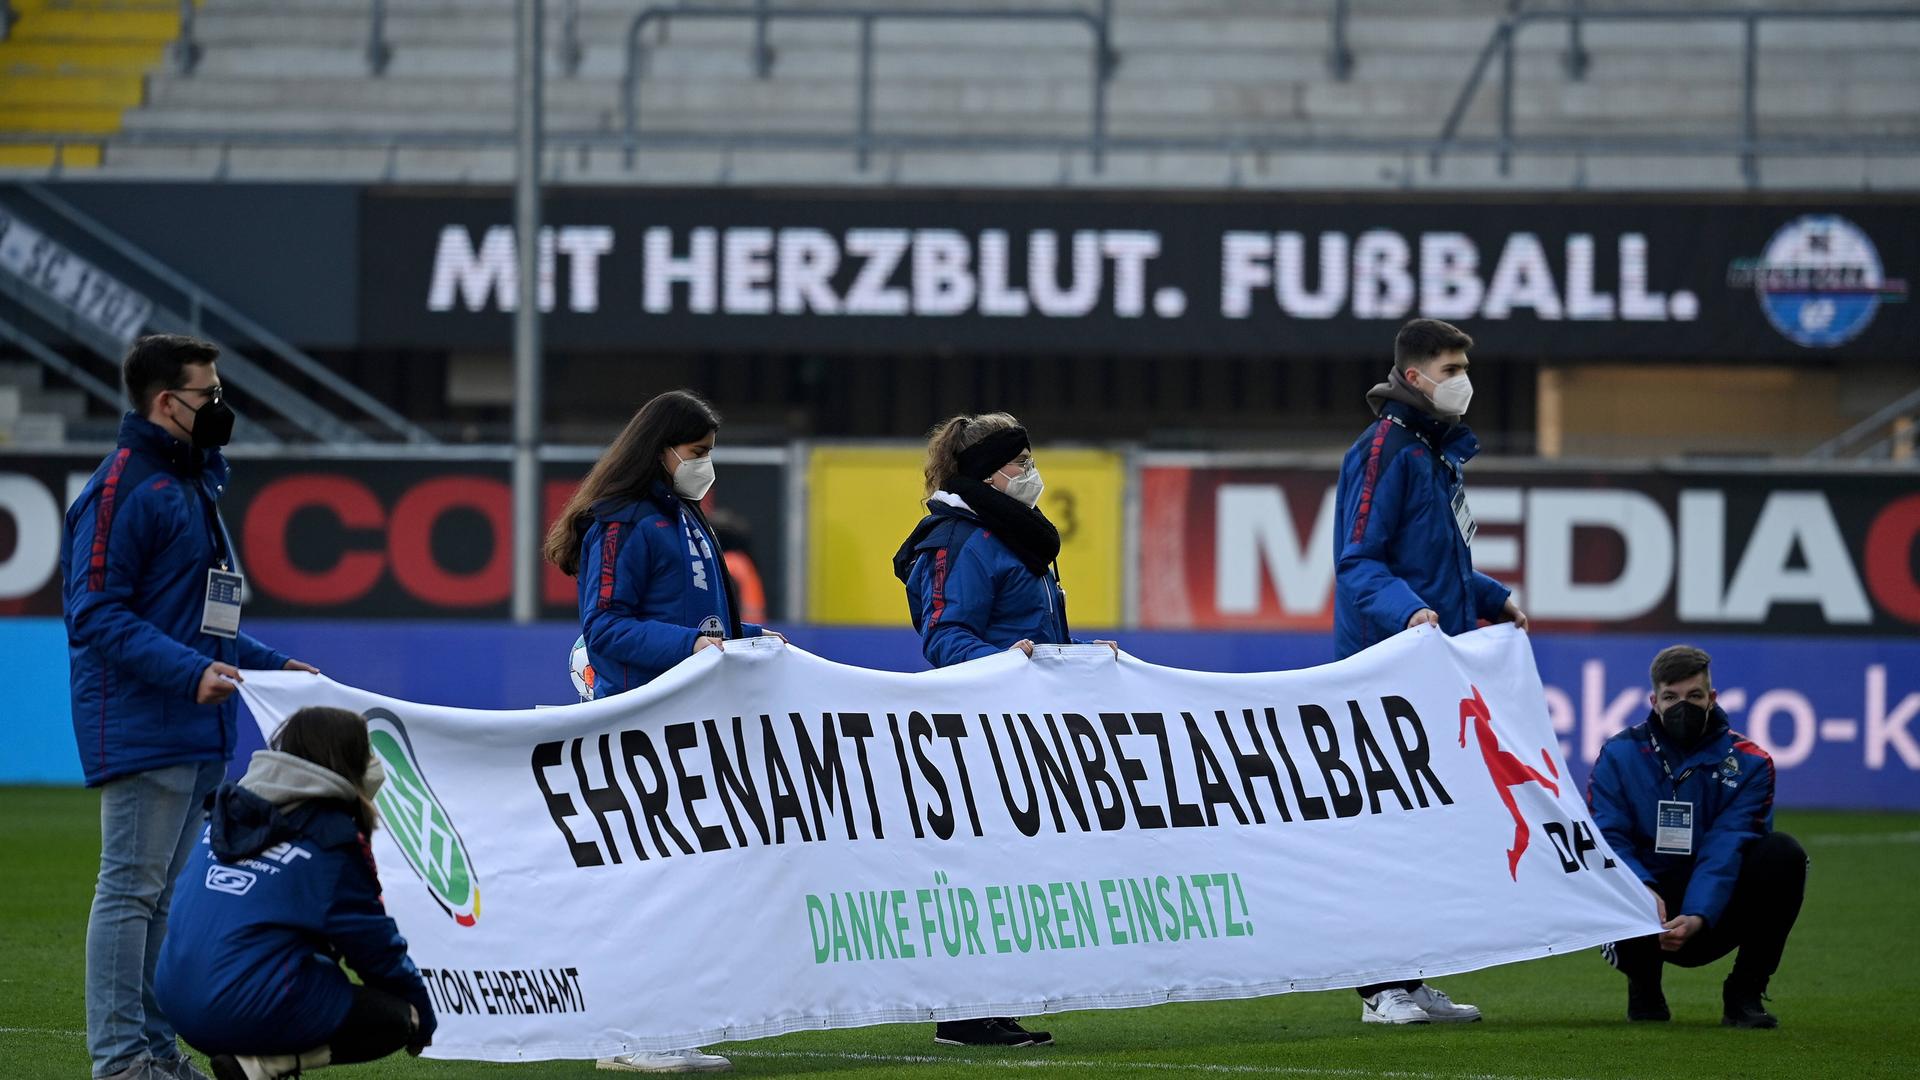 Freiwillige halten in einem Fußballstadion ein Banner hoch mit der Aufschrift: Ehrenamt ist unbezahlbar.